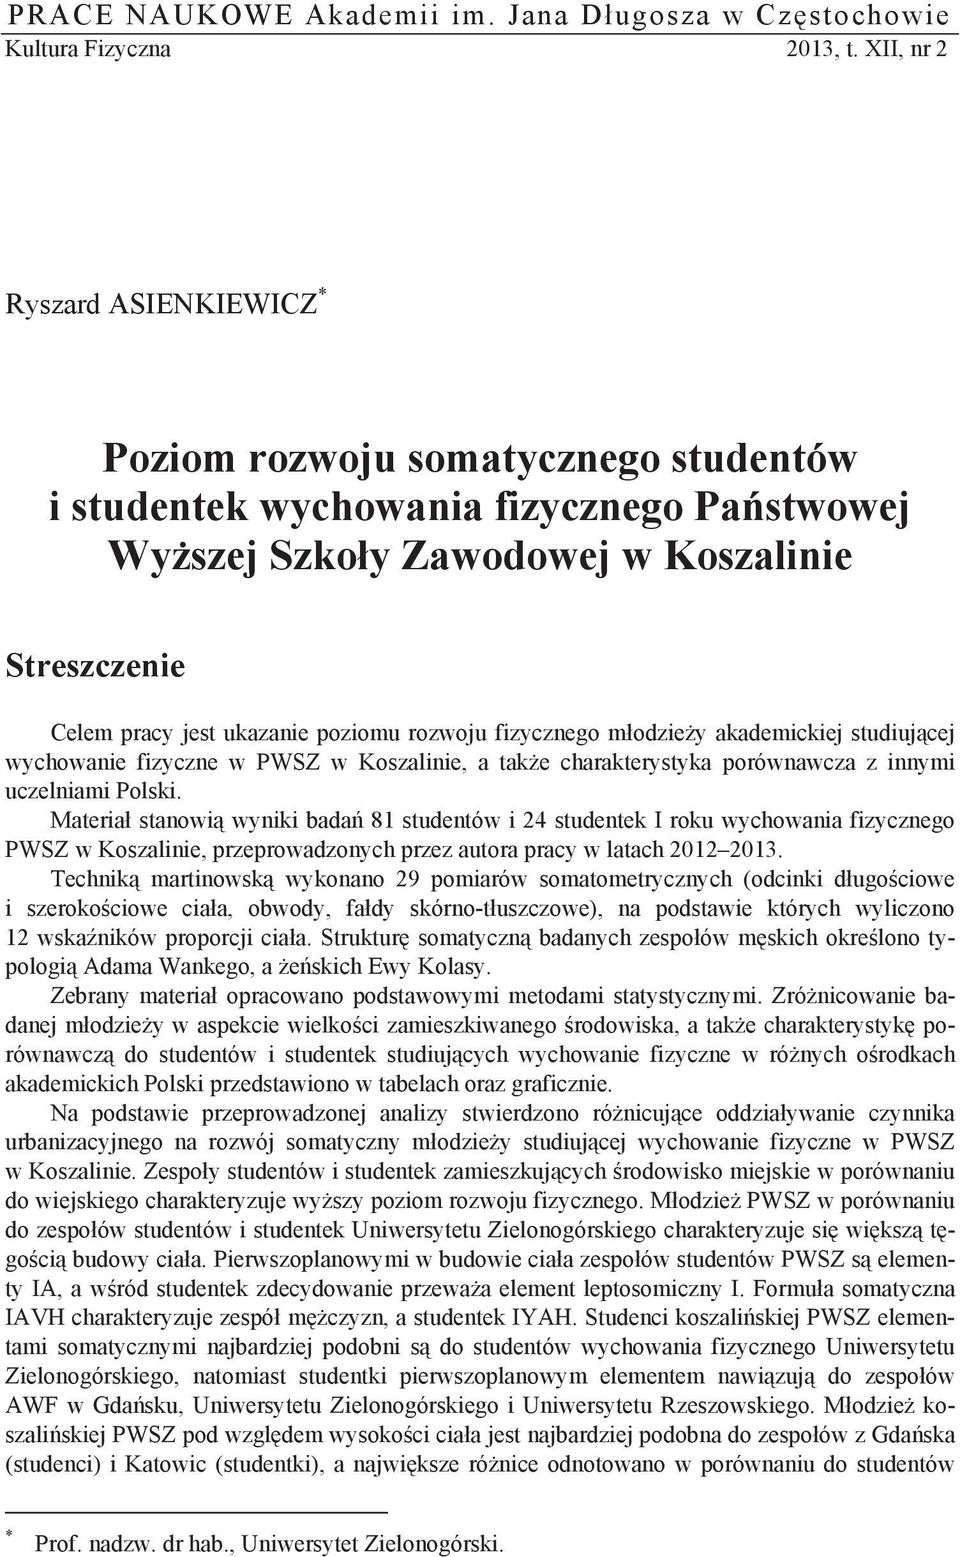 poziomu rozwoju fizycznego m odzie y akademickiej studiuj cej wychowanie fizyczne w PWSZ w Koszalinie, a tak e charakterystyka porównawcza z innymi uczelniami Polski.